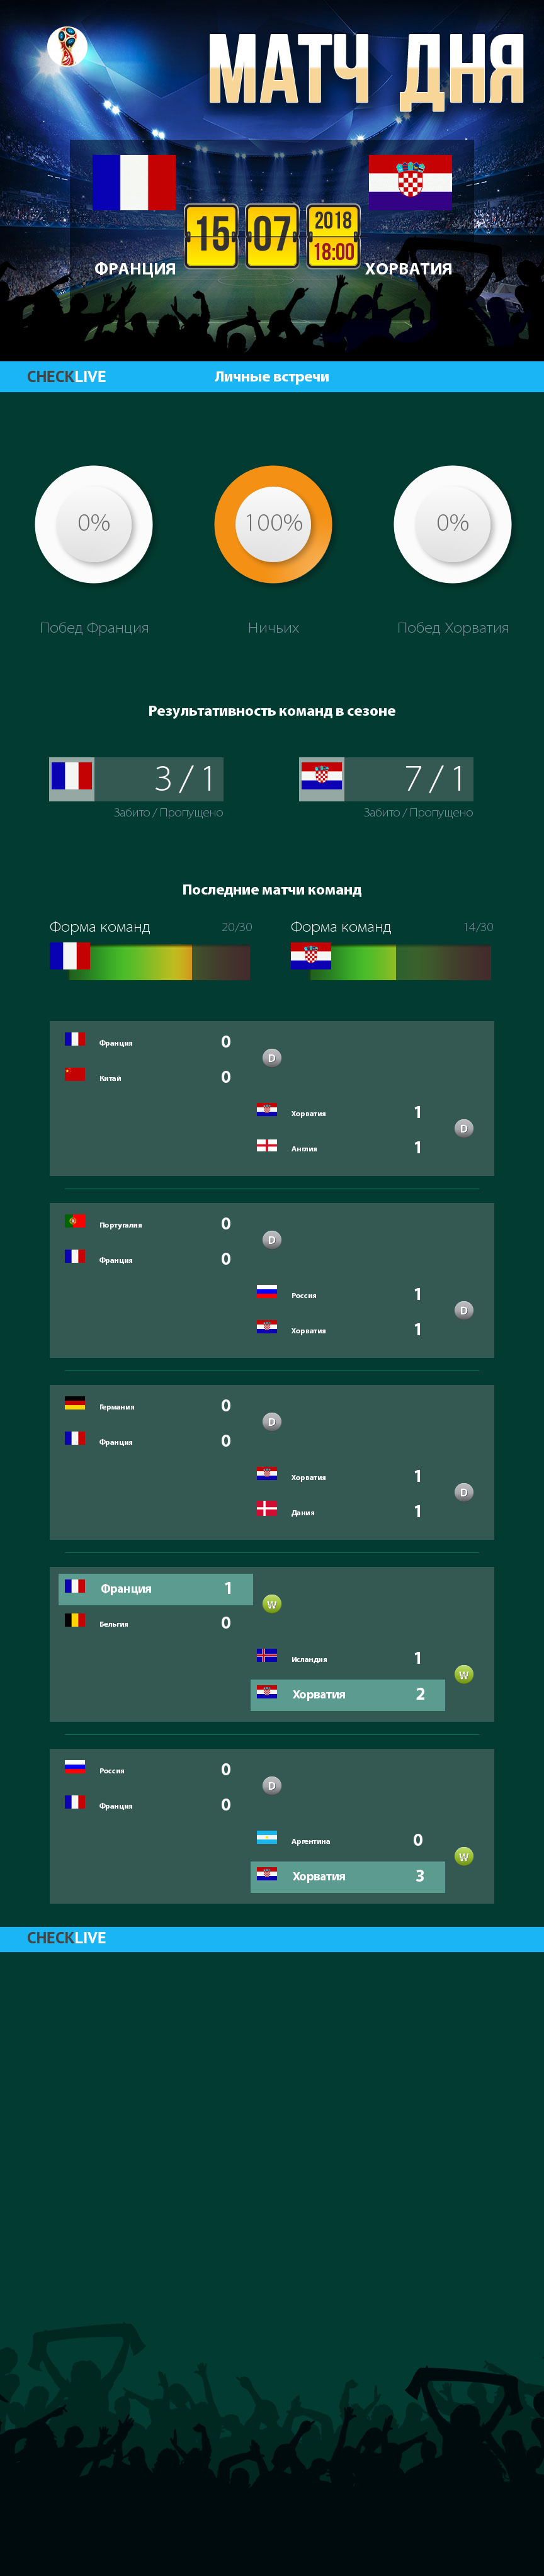 Инфографика Франция и Хорватия матч дня 15.07.2018